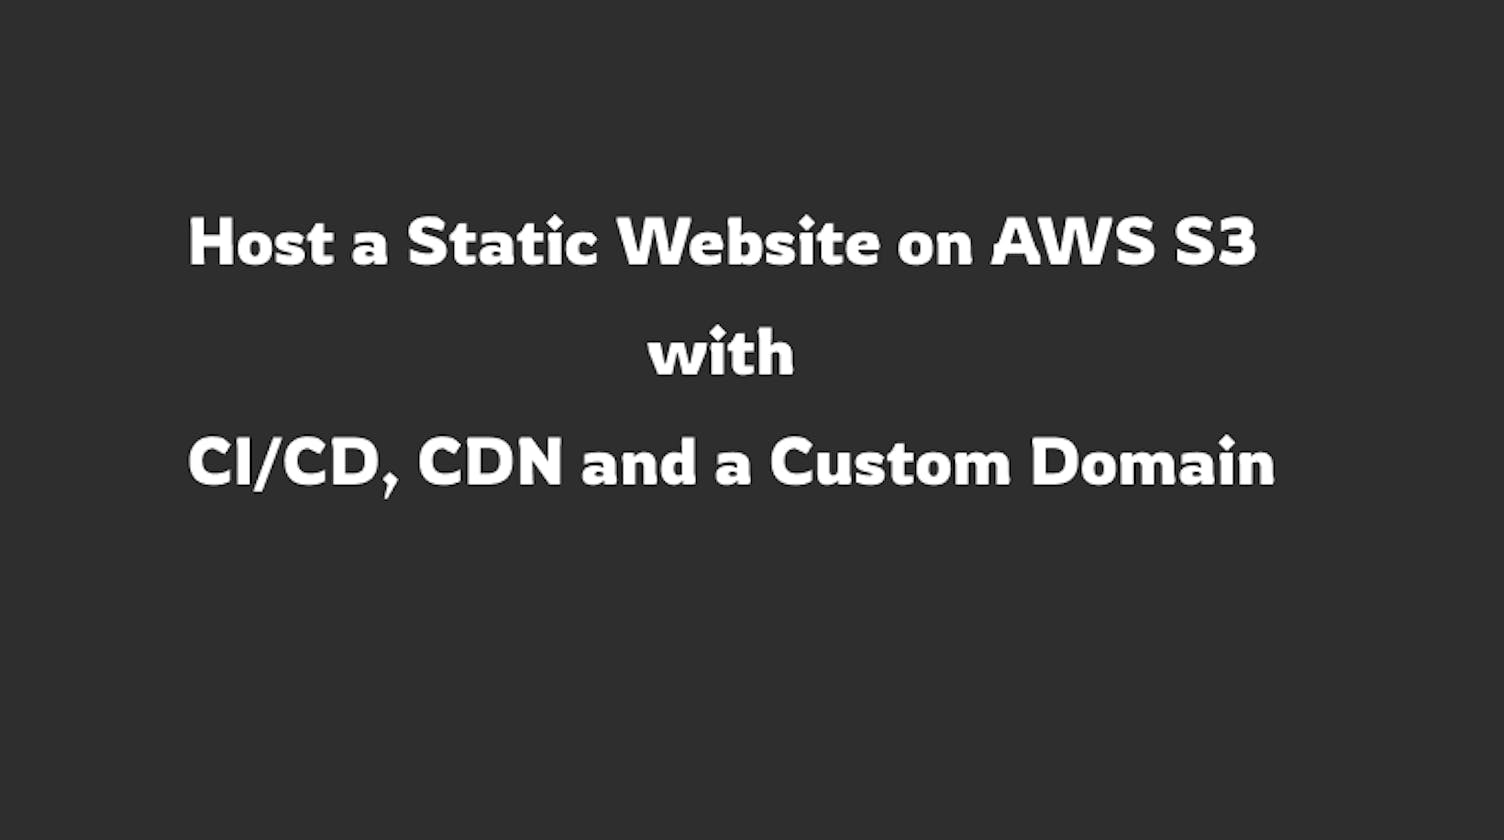 Host a Static Website on AWS S3 with CI/CD, CDN and a Custom Domain